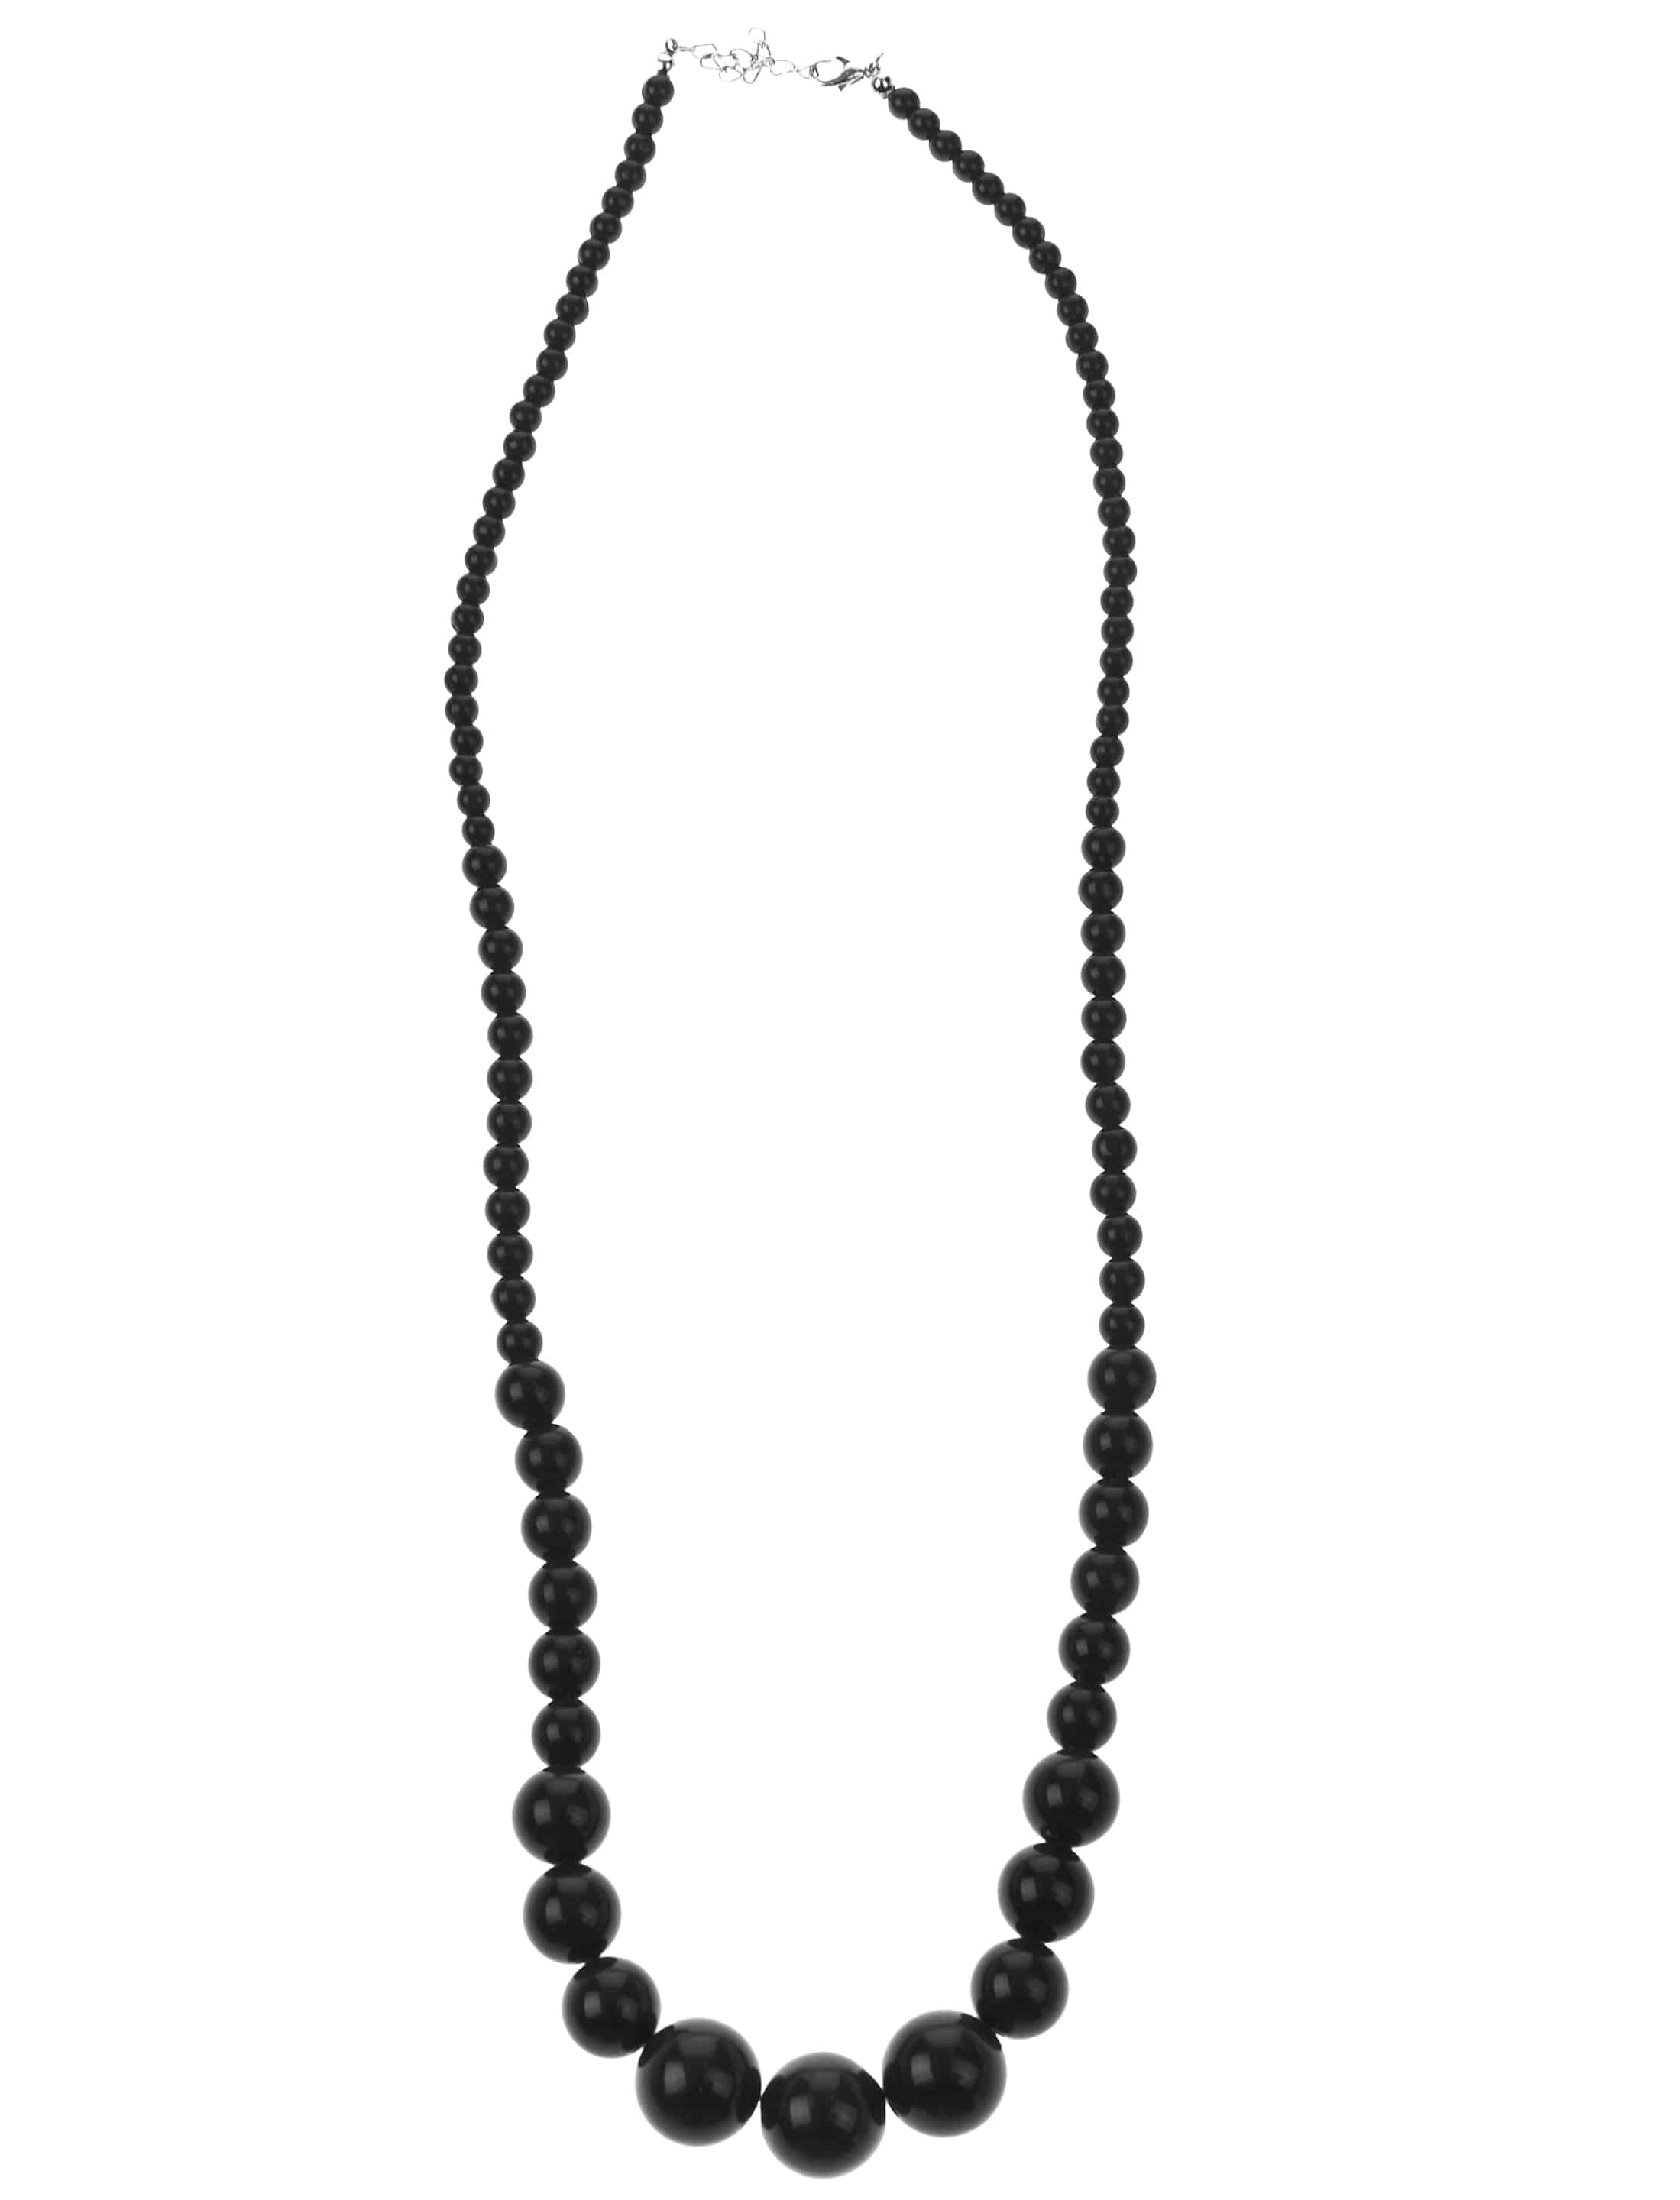 Halskette Perlen schwarz